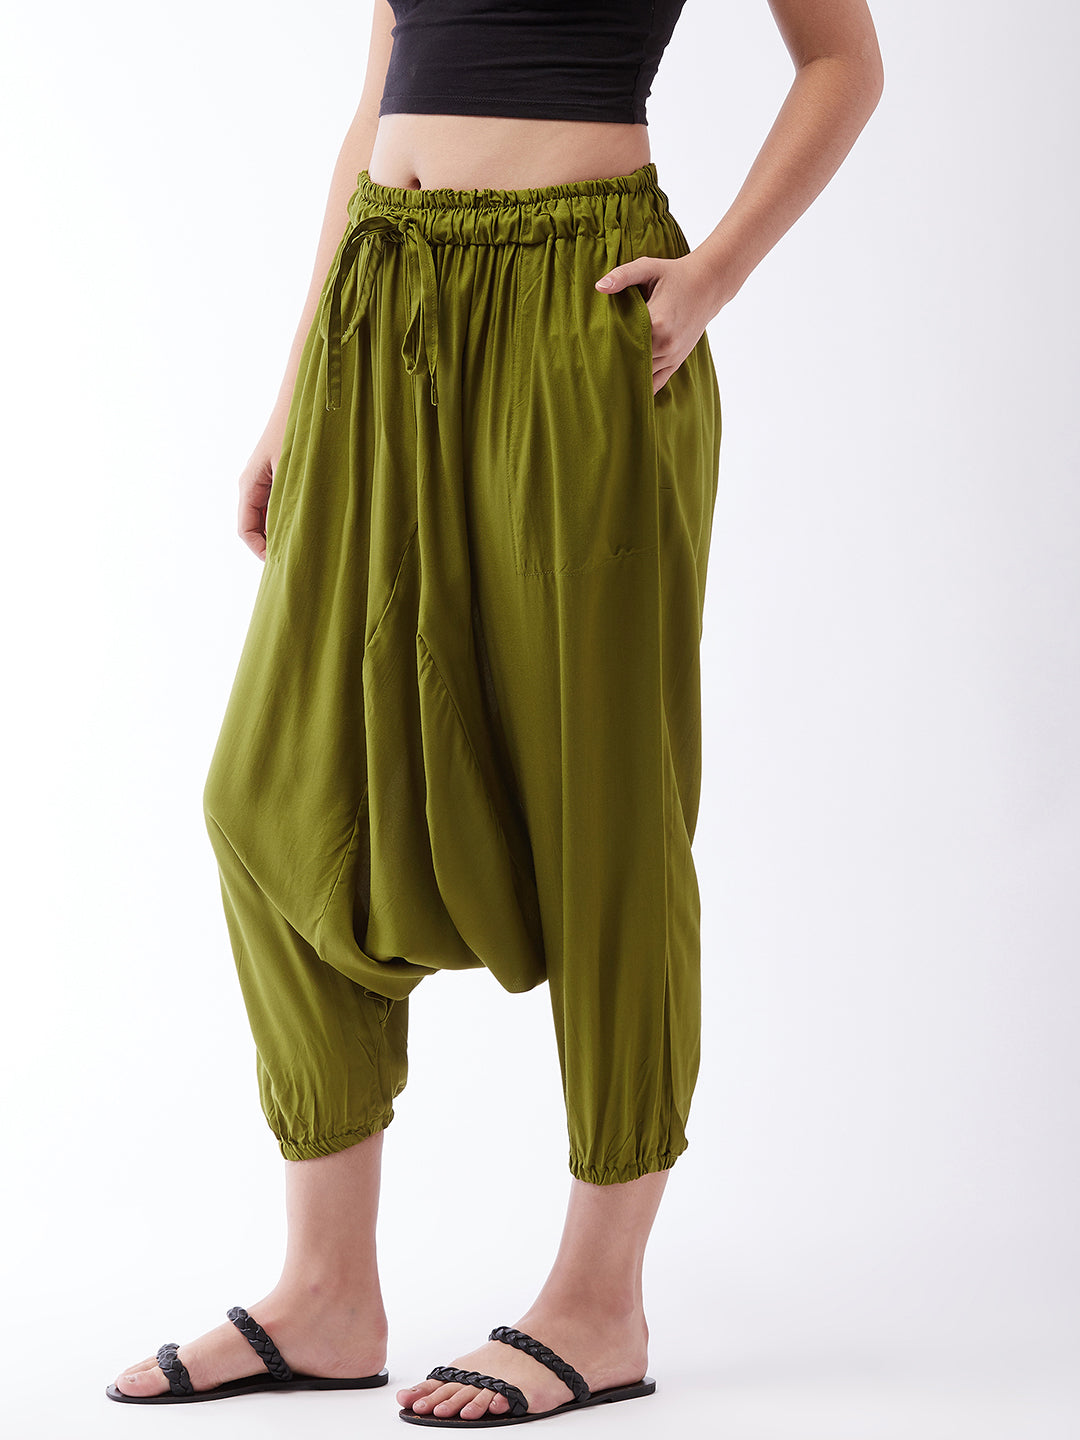 Olive Green Harem Pants For Teens